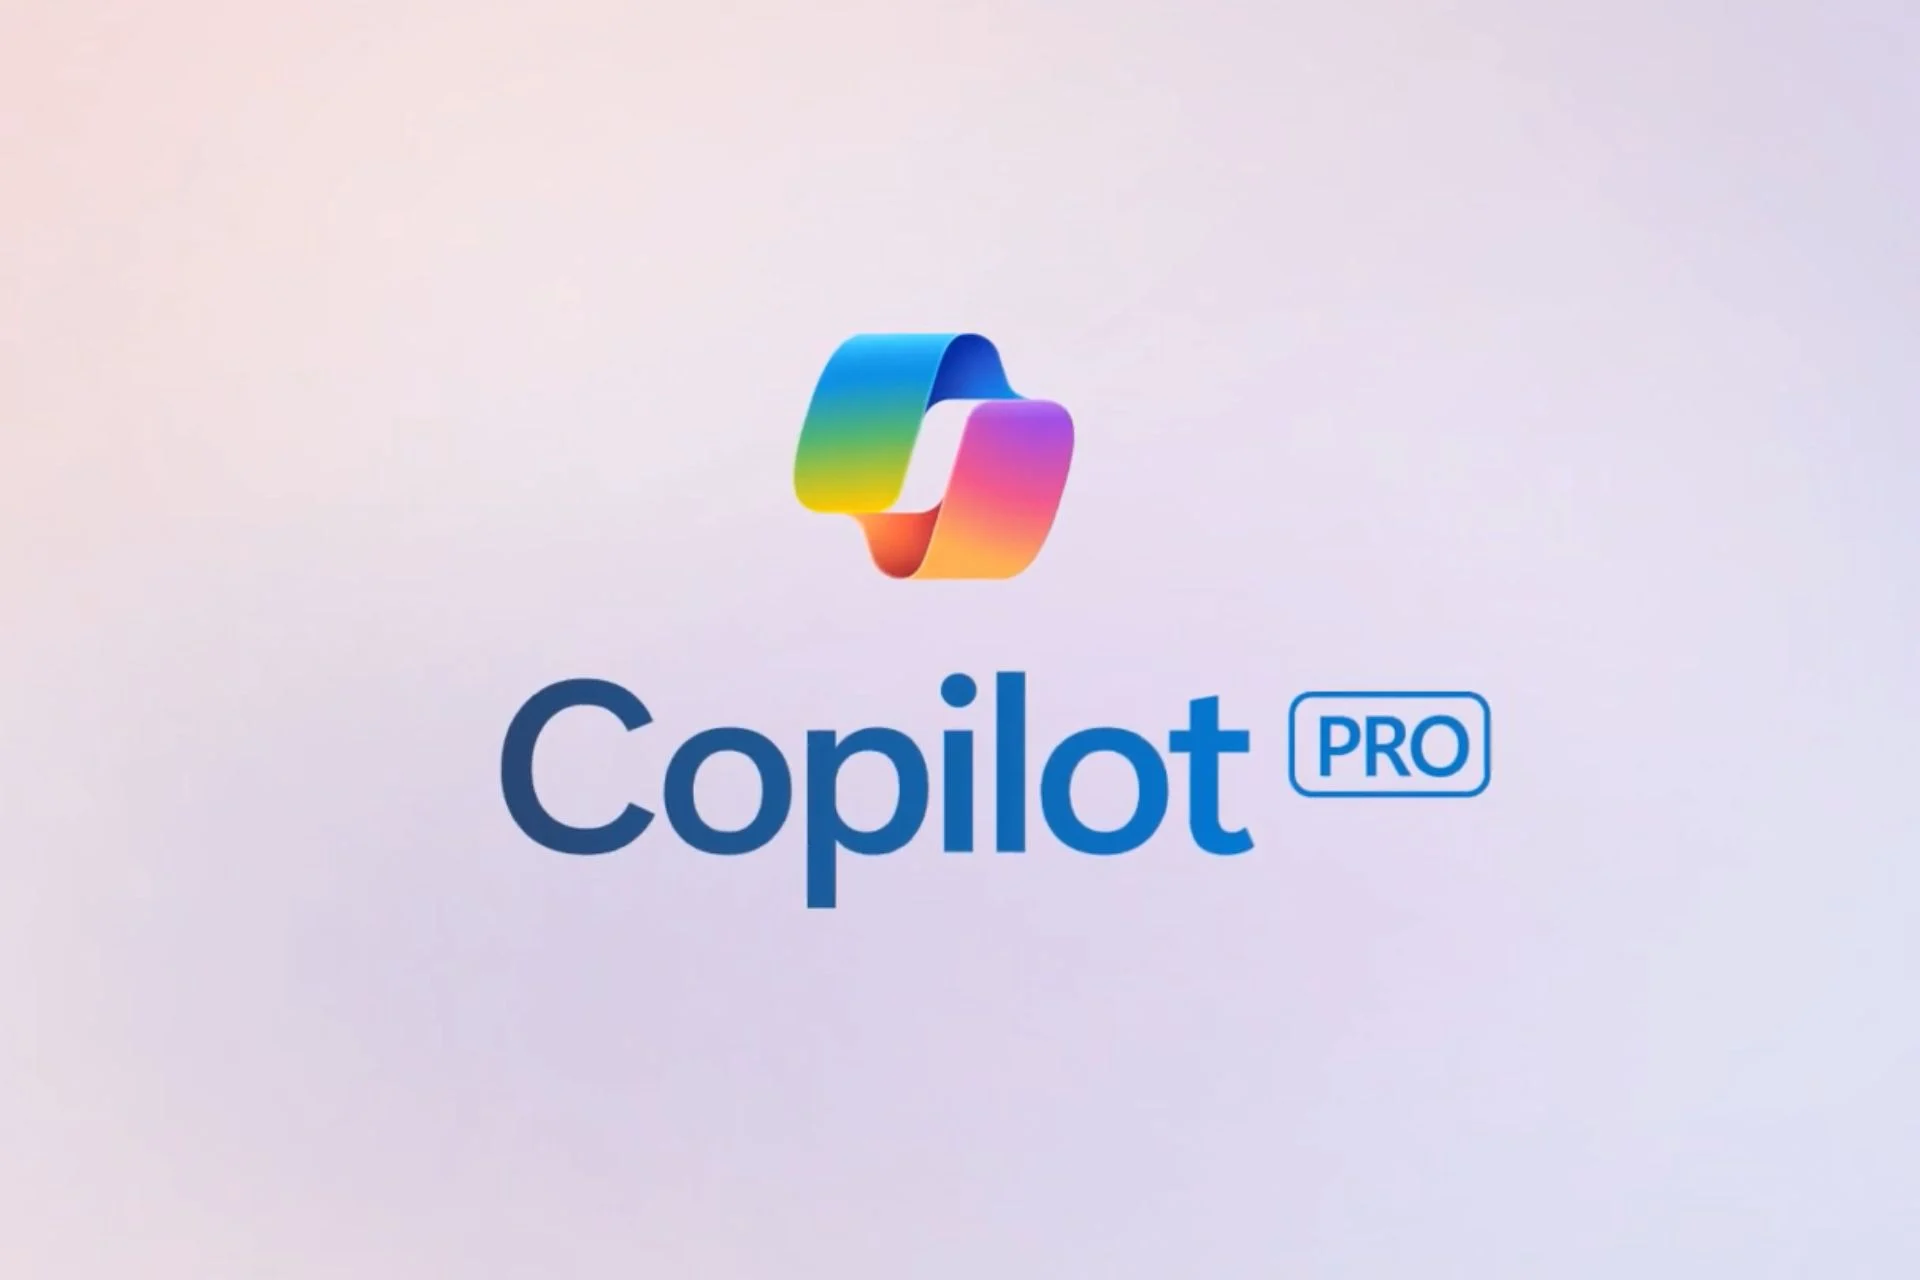 Microsoft tager Copilot Pro Global med en måneds gratis adgang